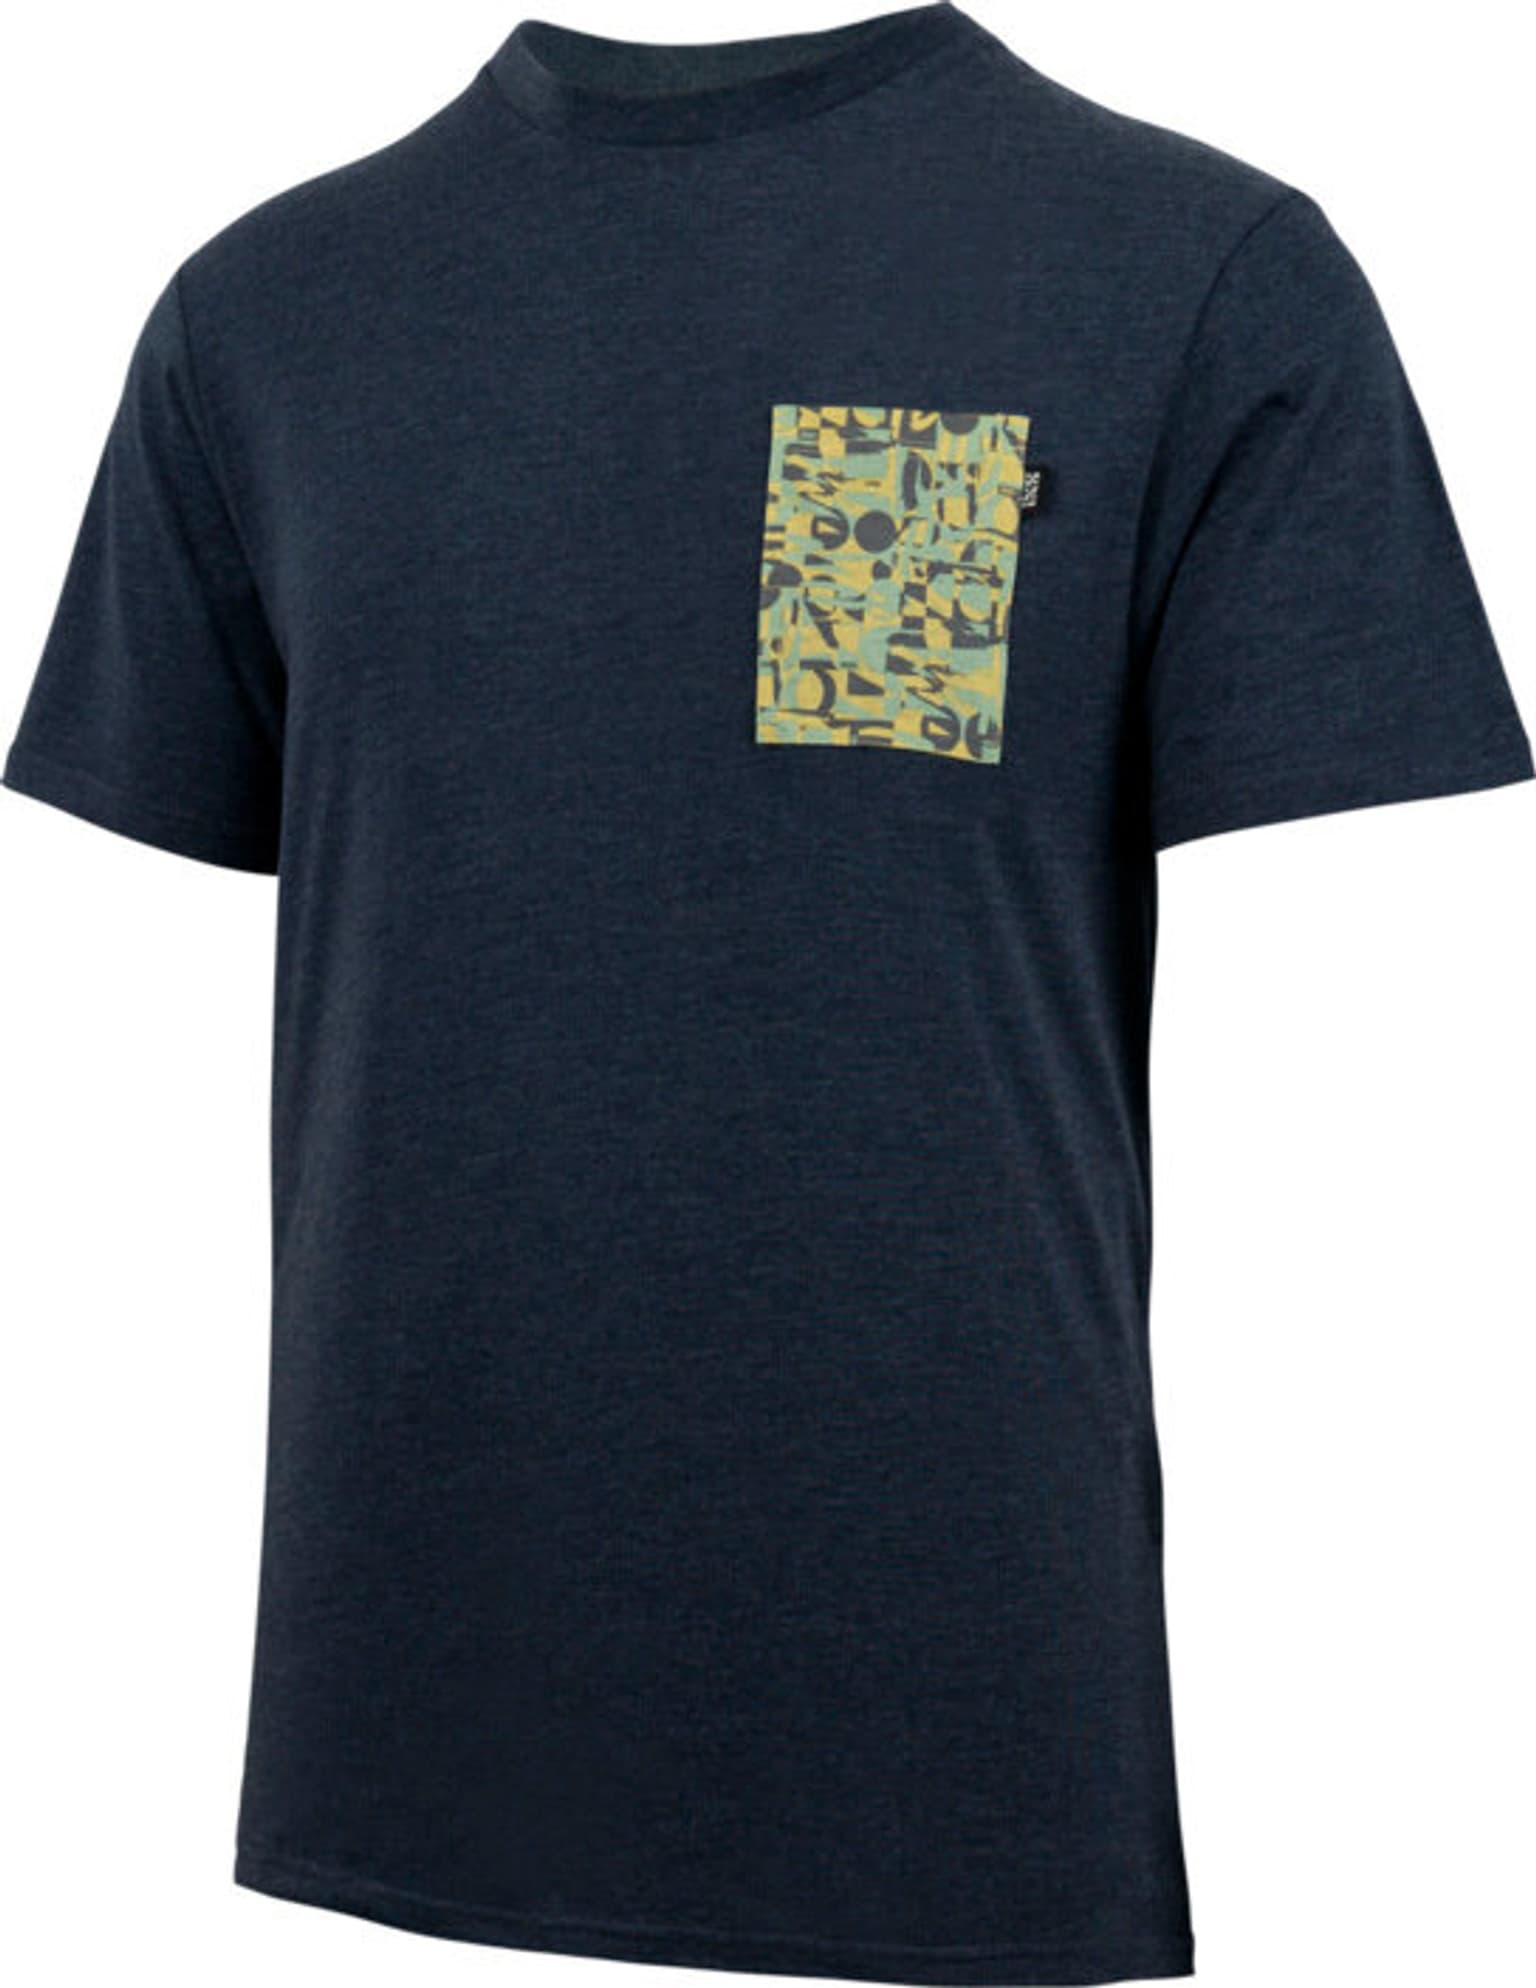 iXS iXS Classic organic 2.0 tee T-shirt blu-marino 1